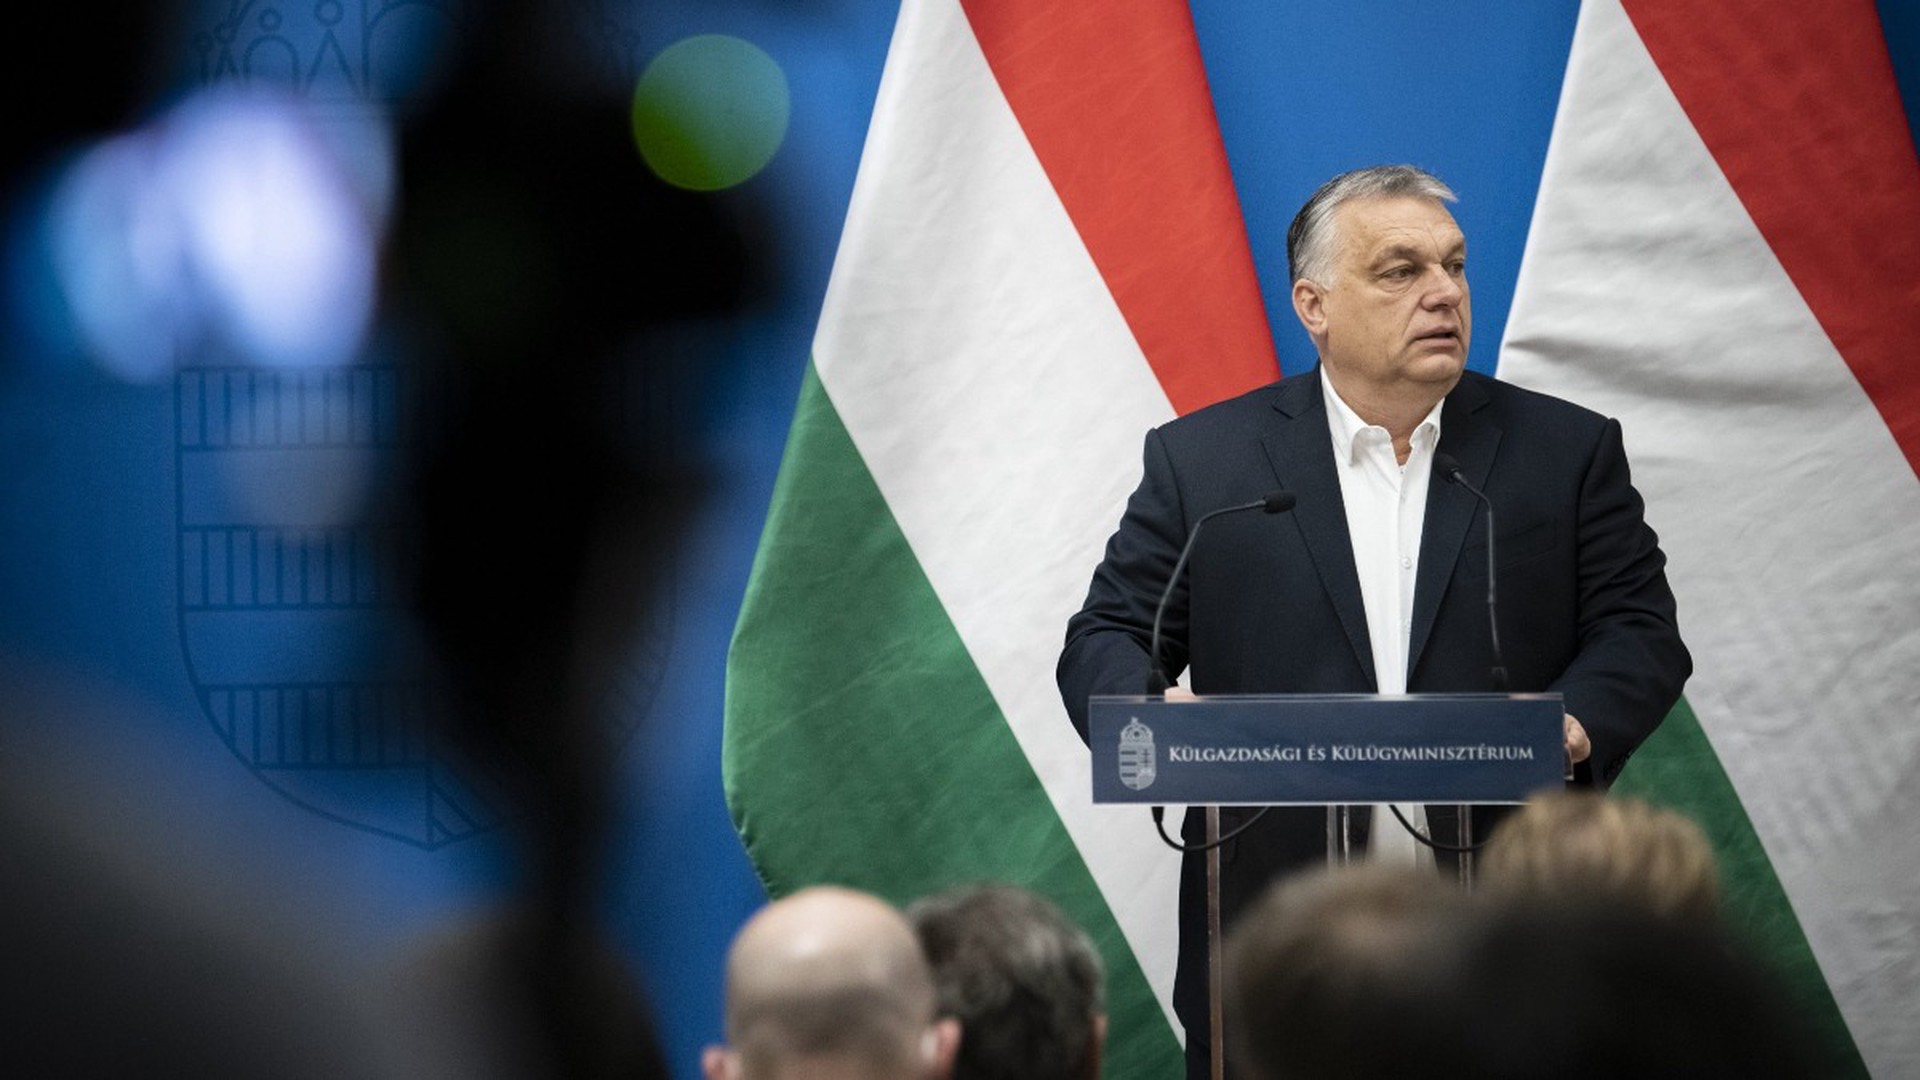 ЕС согласовал новый пакет помощи Украине с двумя условиями премьера Венгрии Орбана